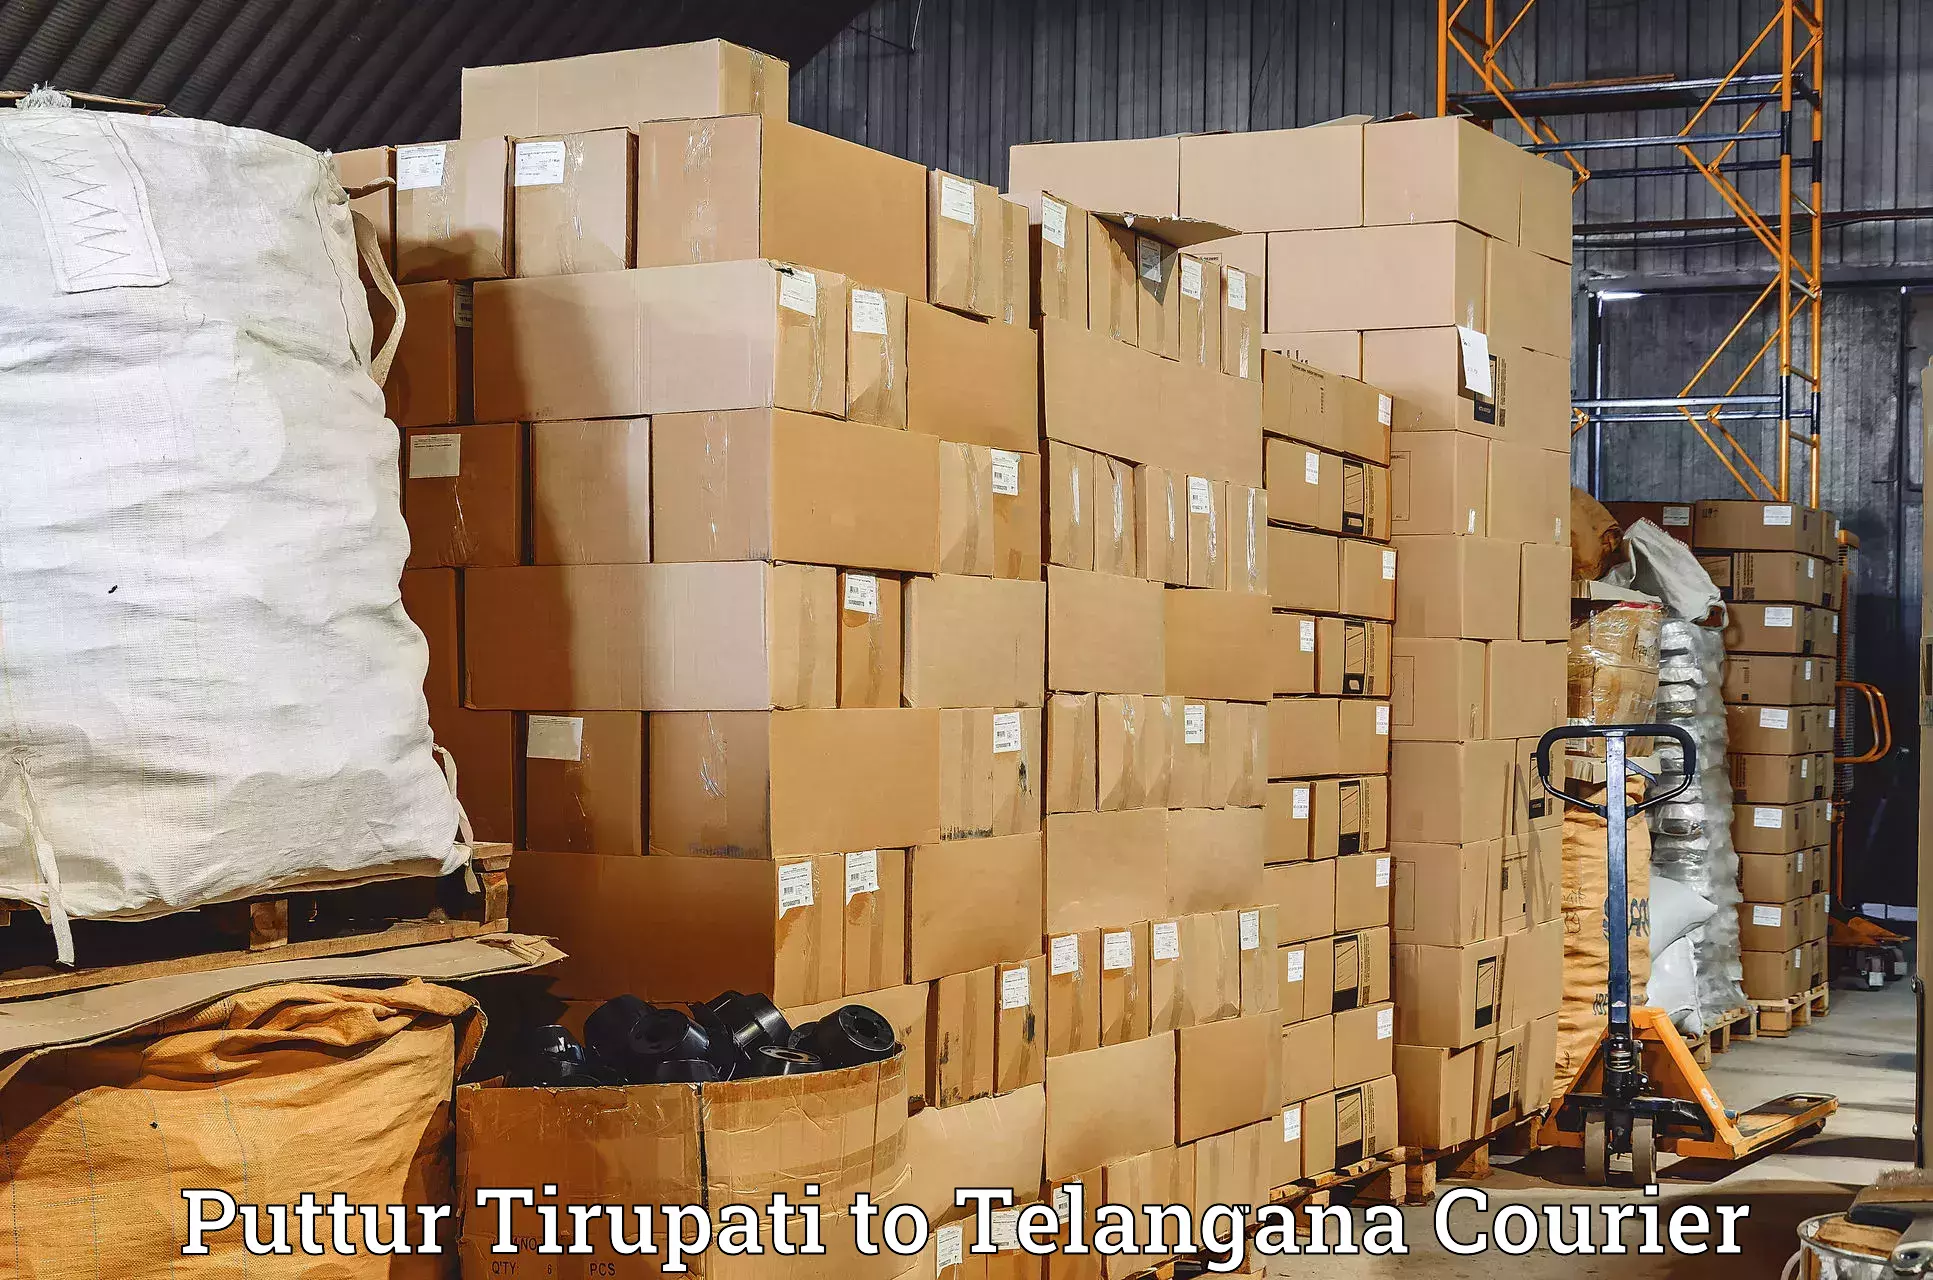 Urgent courier needs Puttur Tirupati to Cheyyur